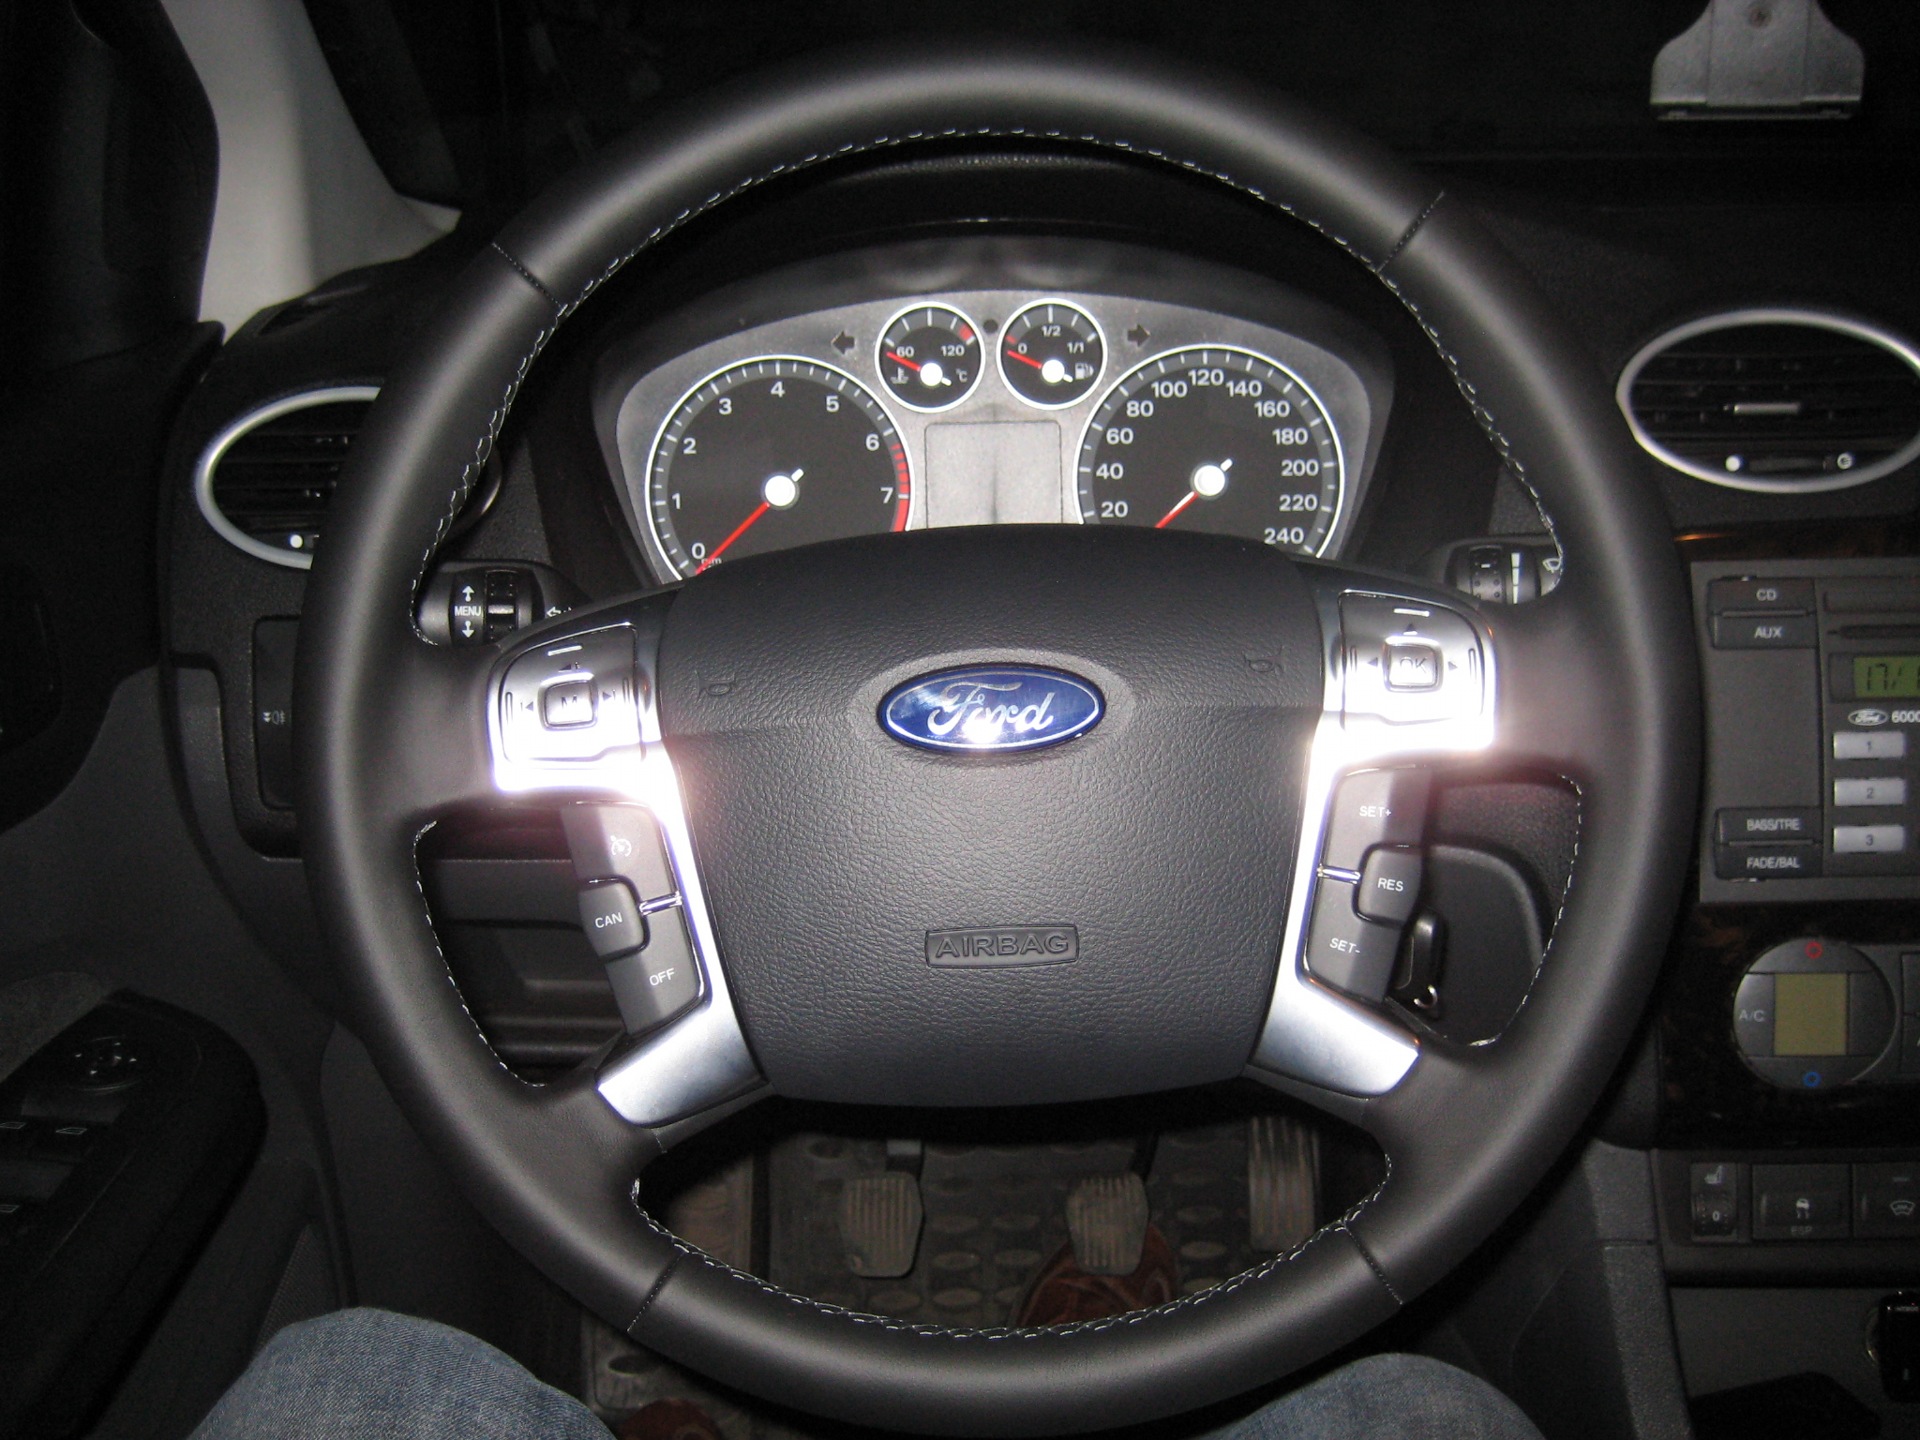 Ford Focus 2015 - autofakty.com